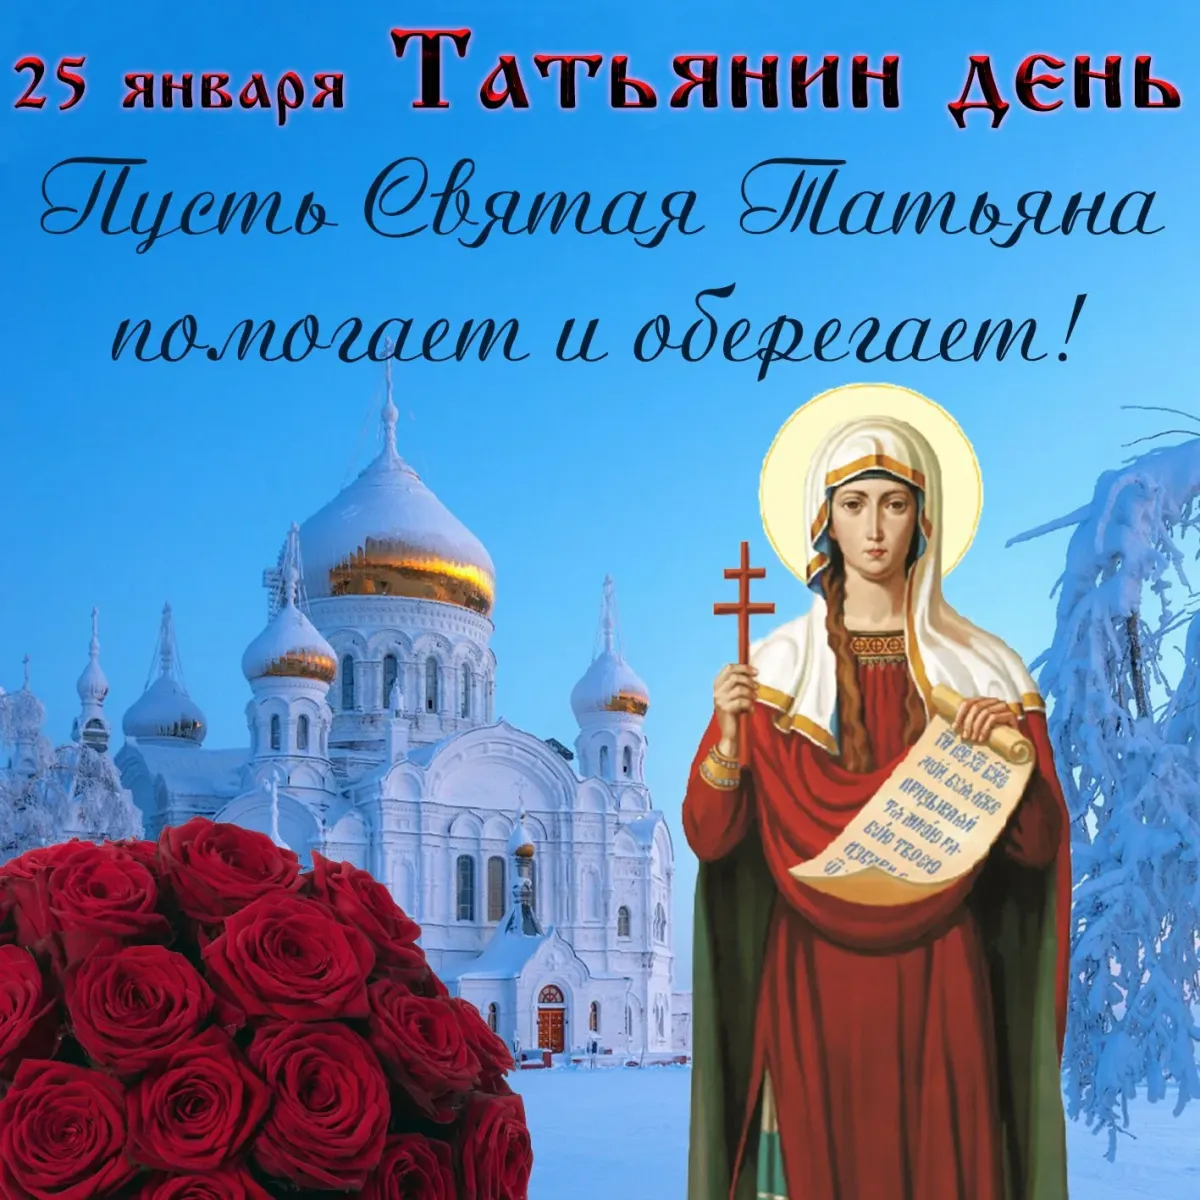 М татьяной днем. 25 Января Святая мученица Татиана. Татьянин день поздравление. Татьянин день открытки с поздравлениями. Поздравления с днём Татьяны.